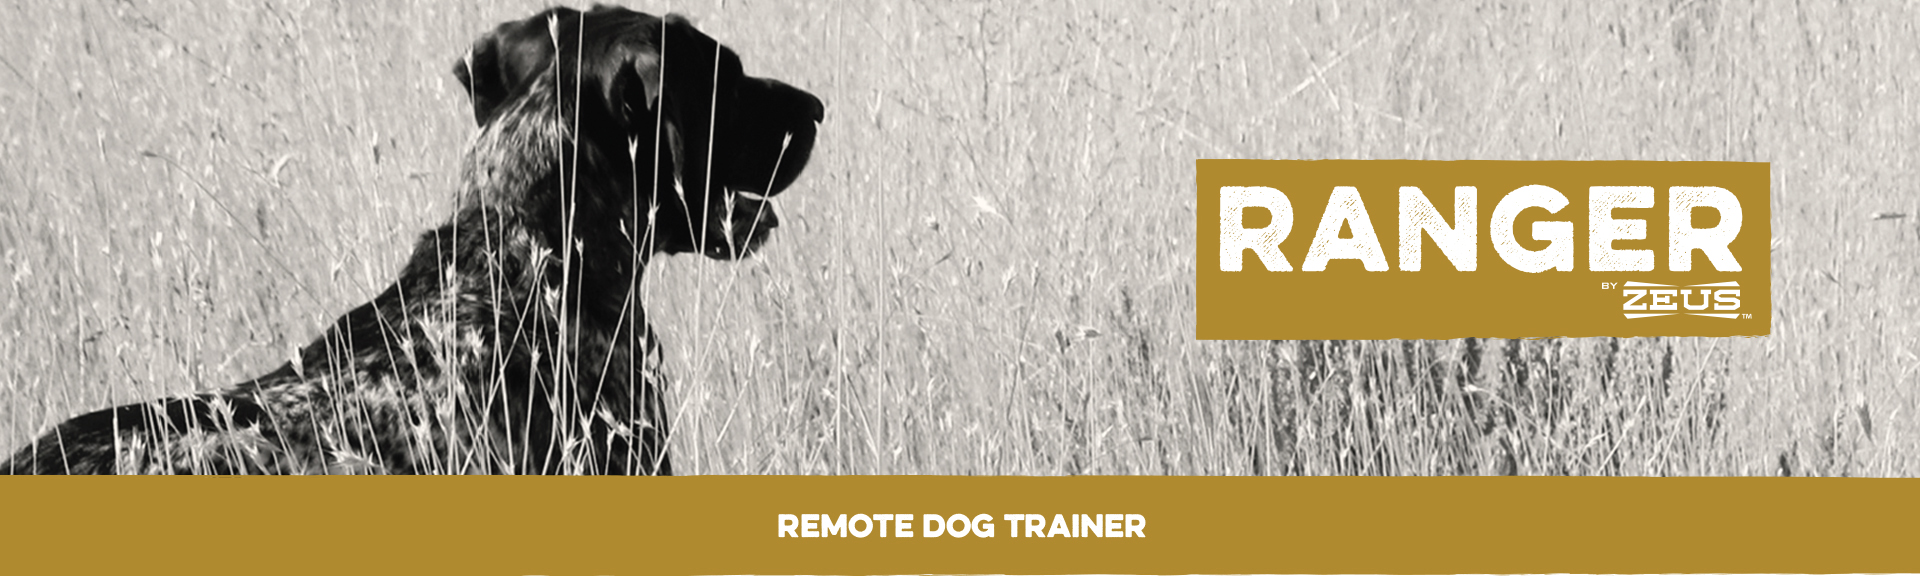 Zeus Ranger Remote Dog Trainer